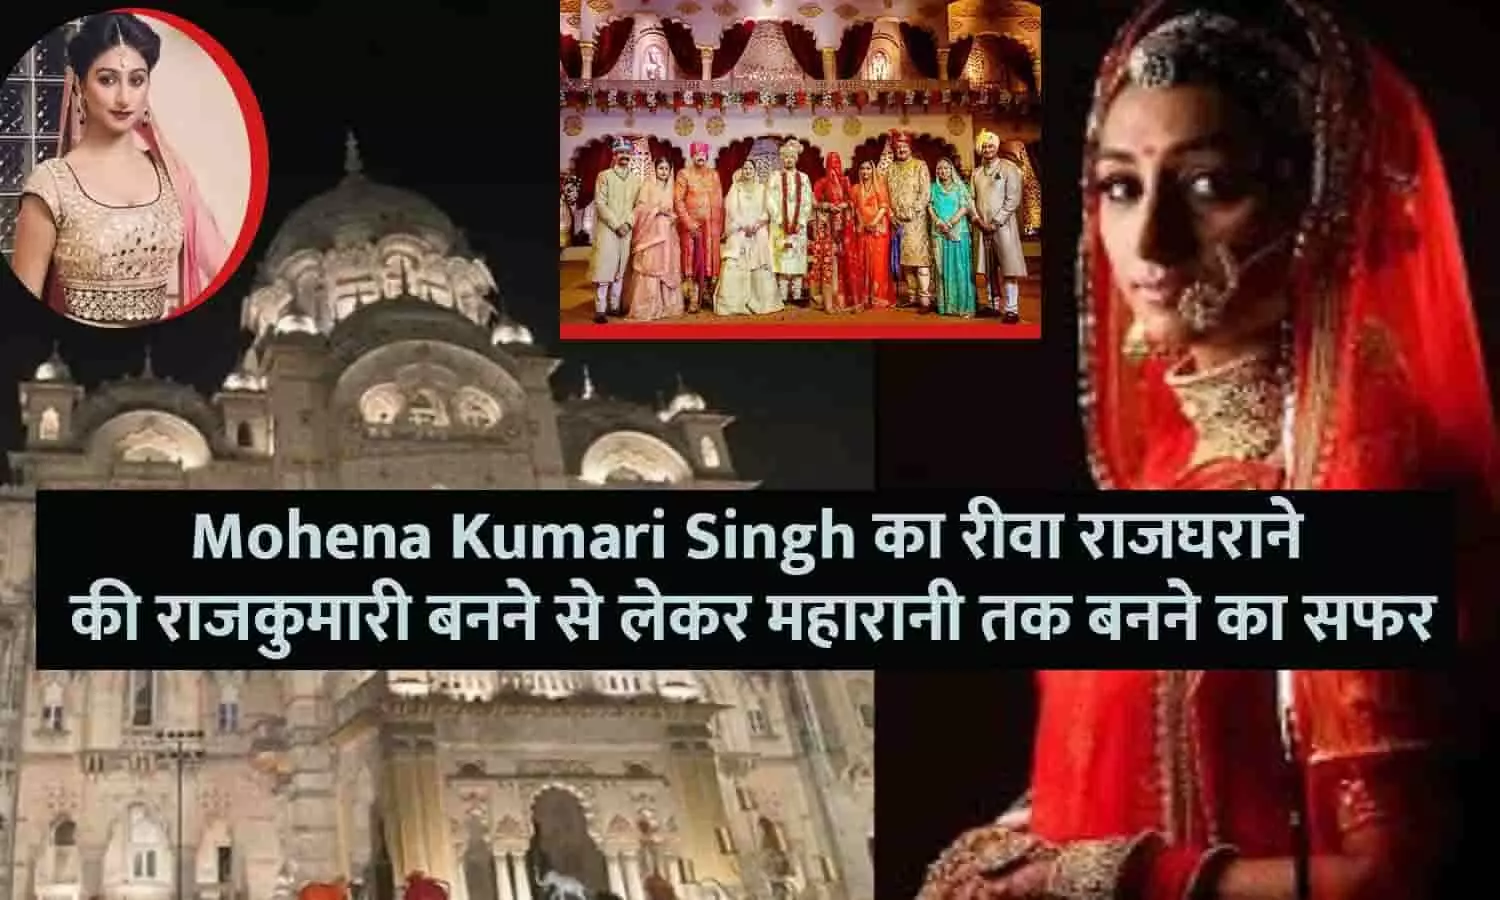 Mohena Kumari Singh का रीवा राजघराने की राजकुमारी बनने से लेकर महारानी तक बनने का सफर, फटाफट यहाँ से जाने